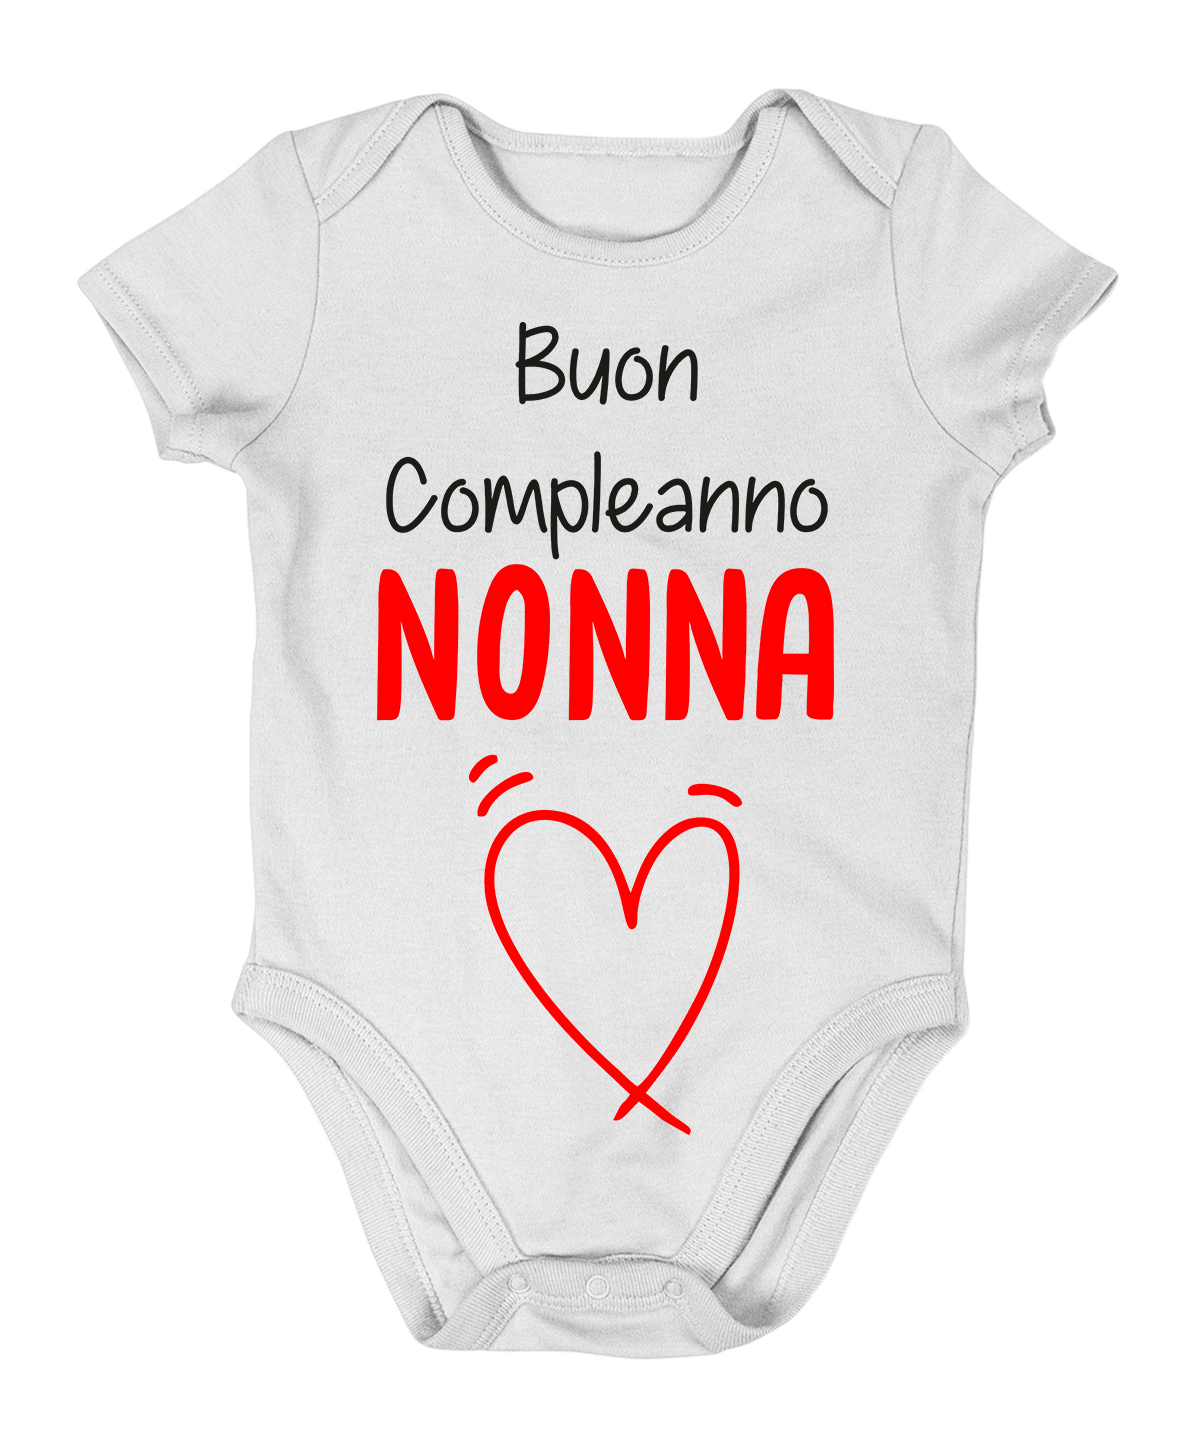 body nonna - Buon Compleanno nonna - da neonato in cotone - idea regalo -  ColorFamily